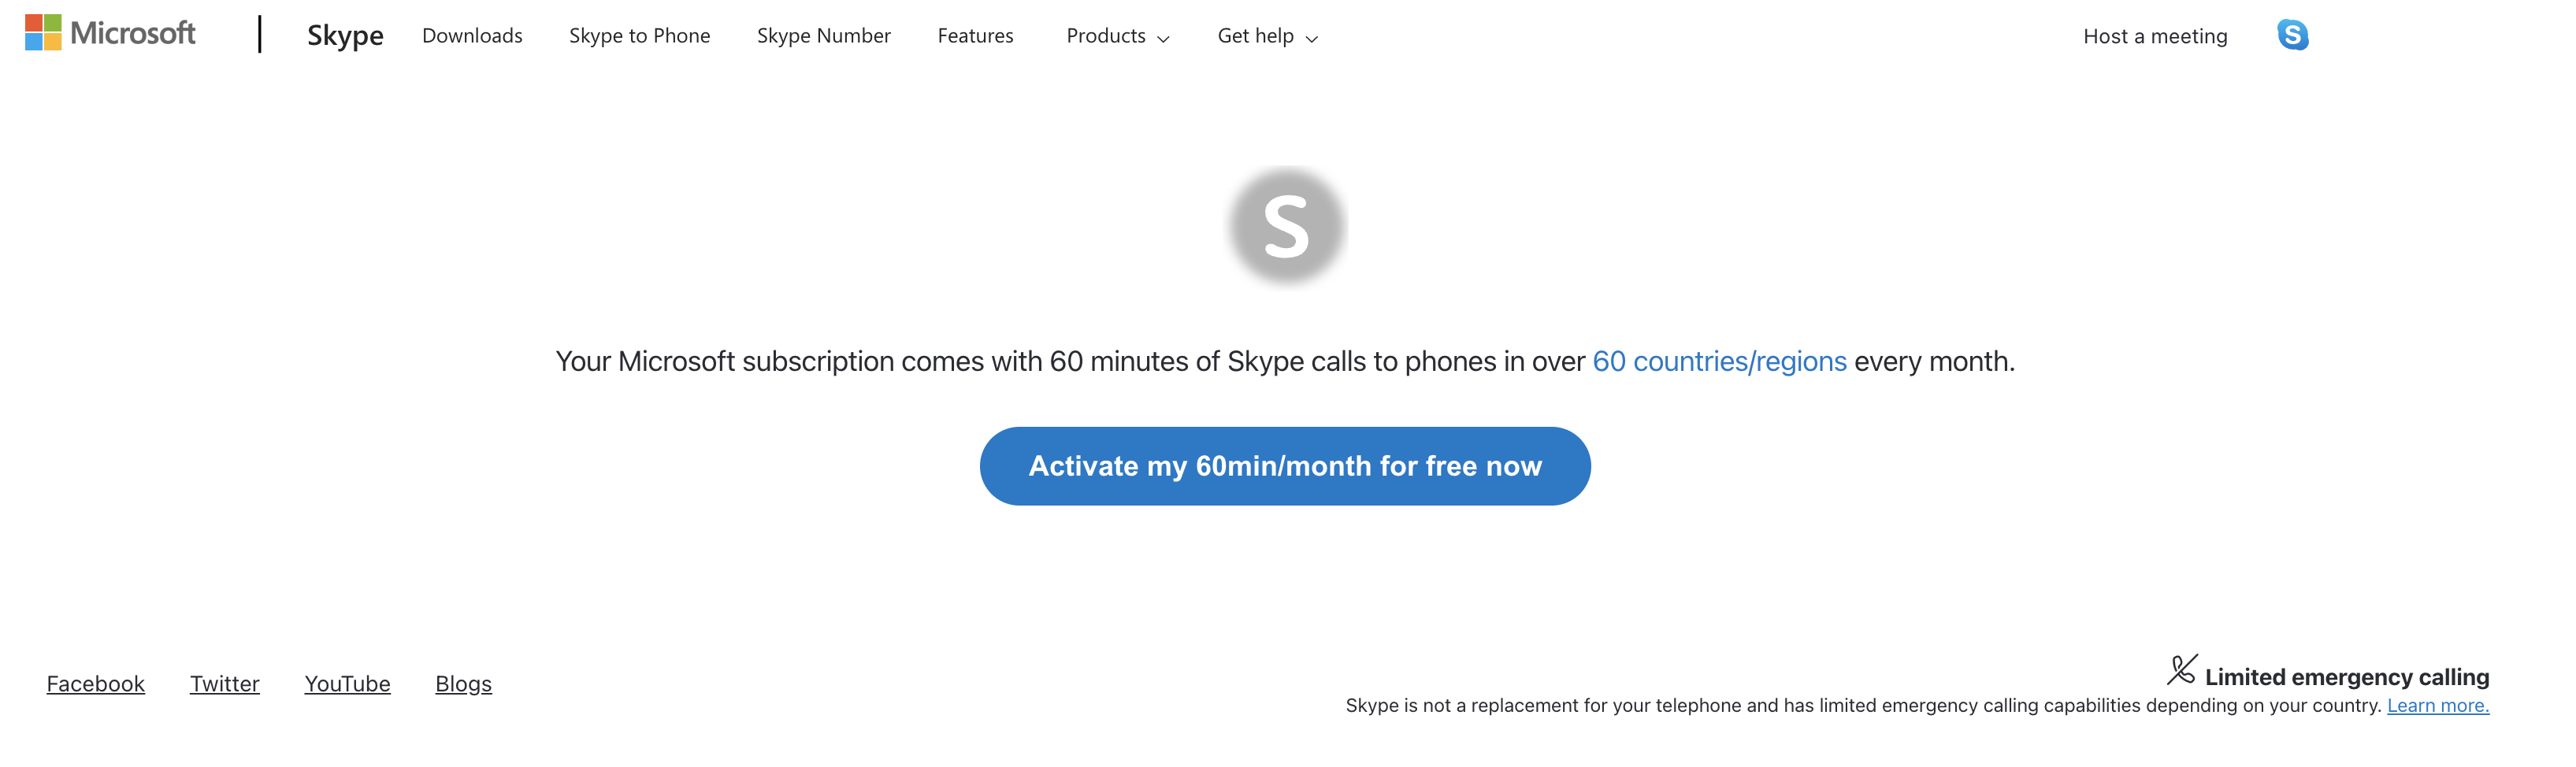 使用 Skype 激活 60 分钟免费网页